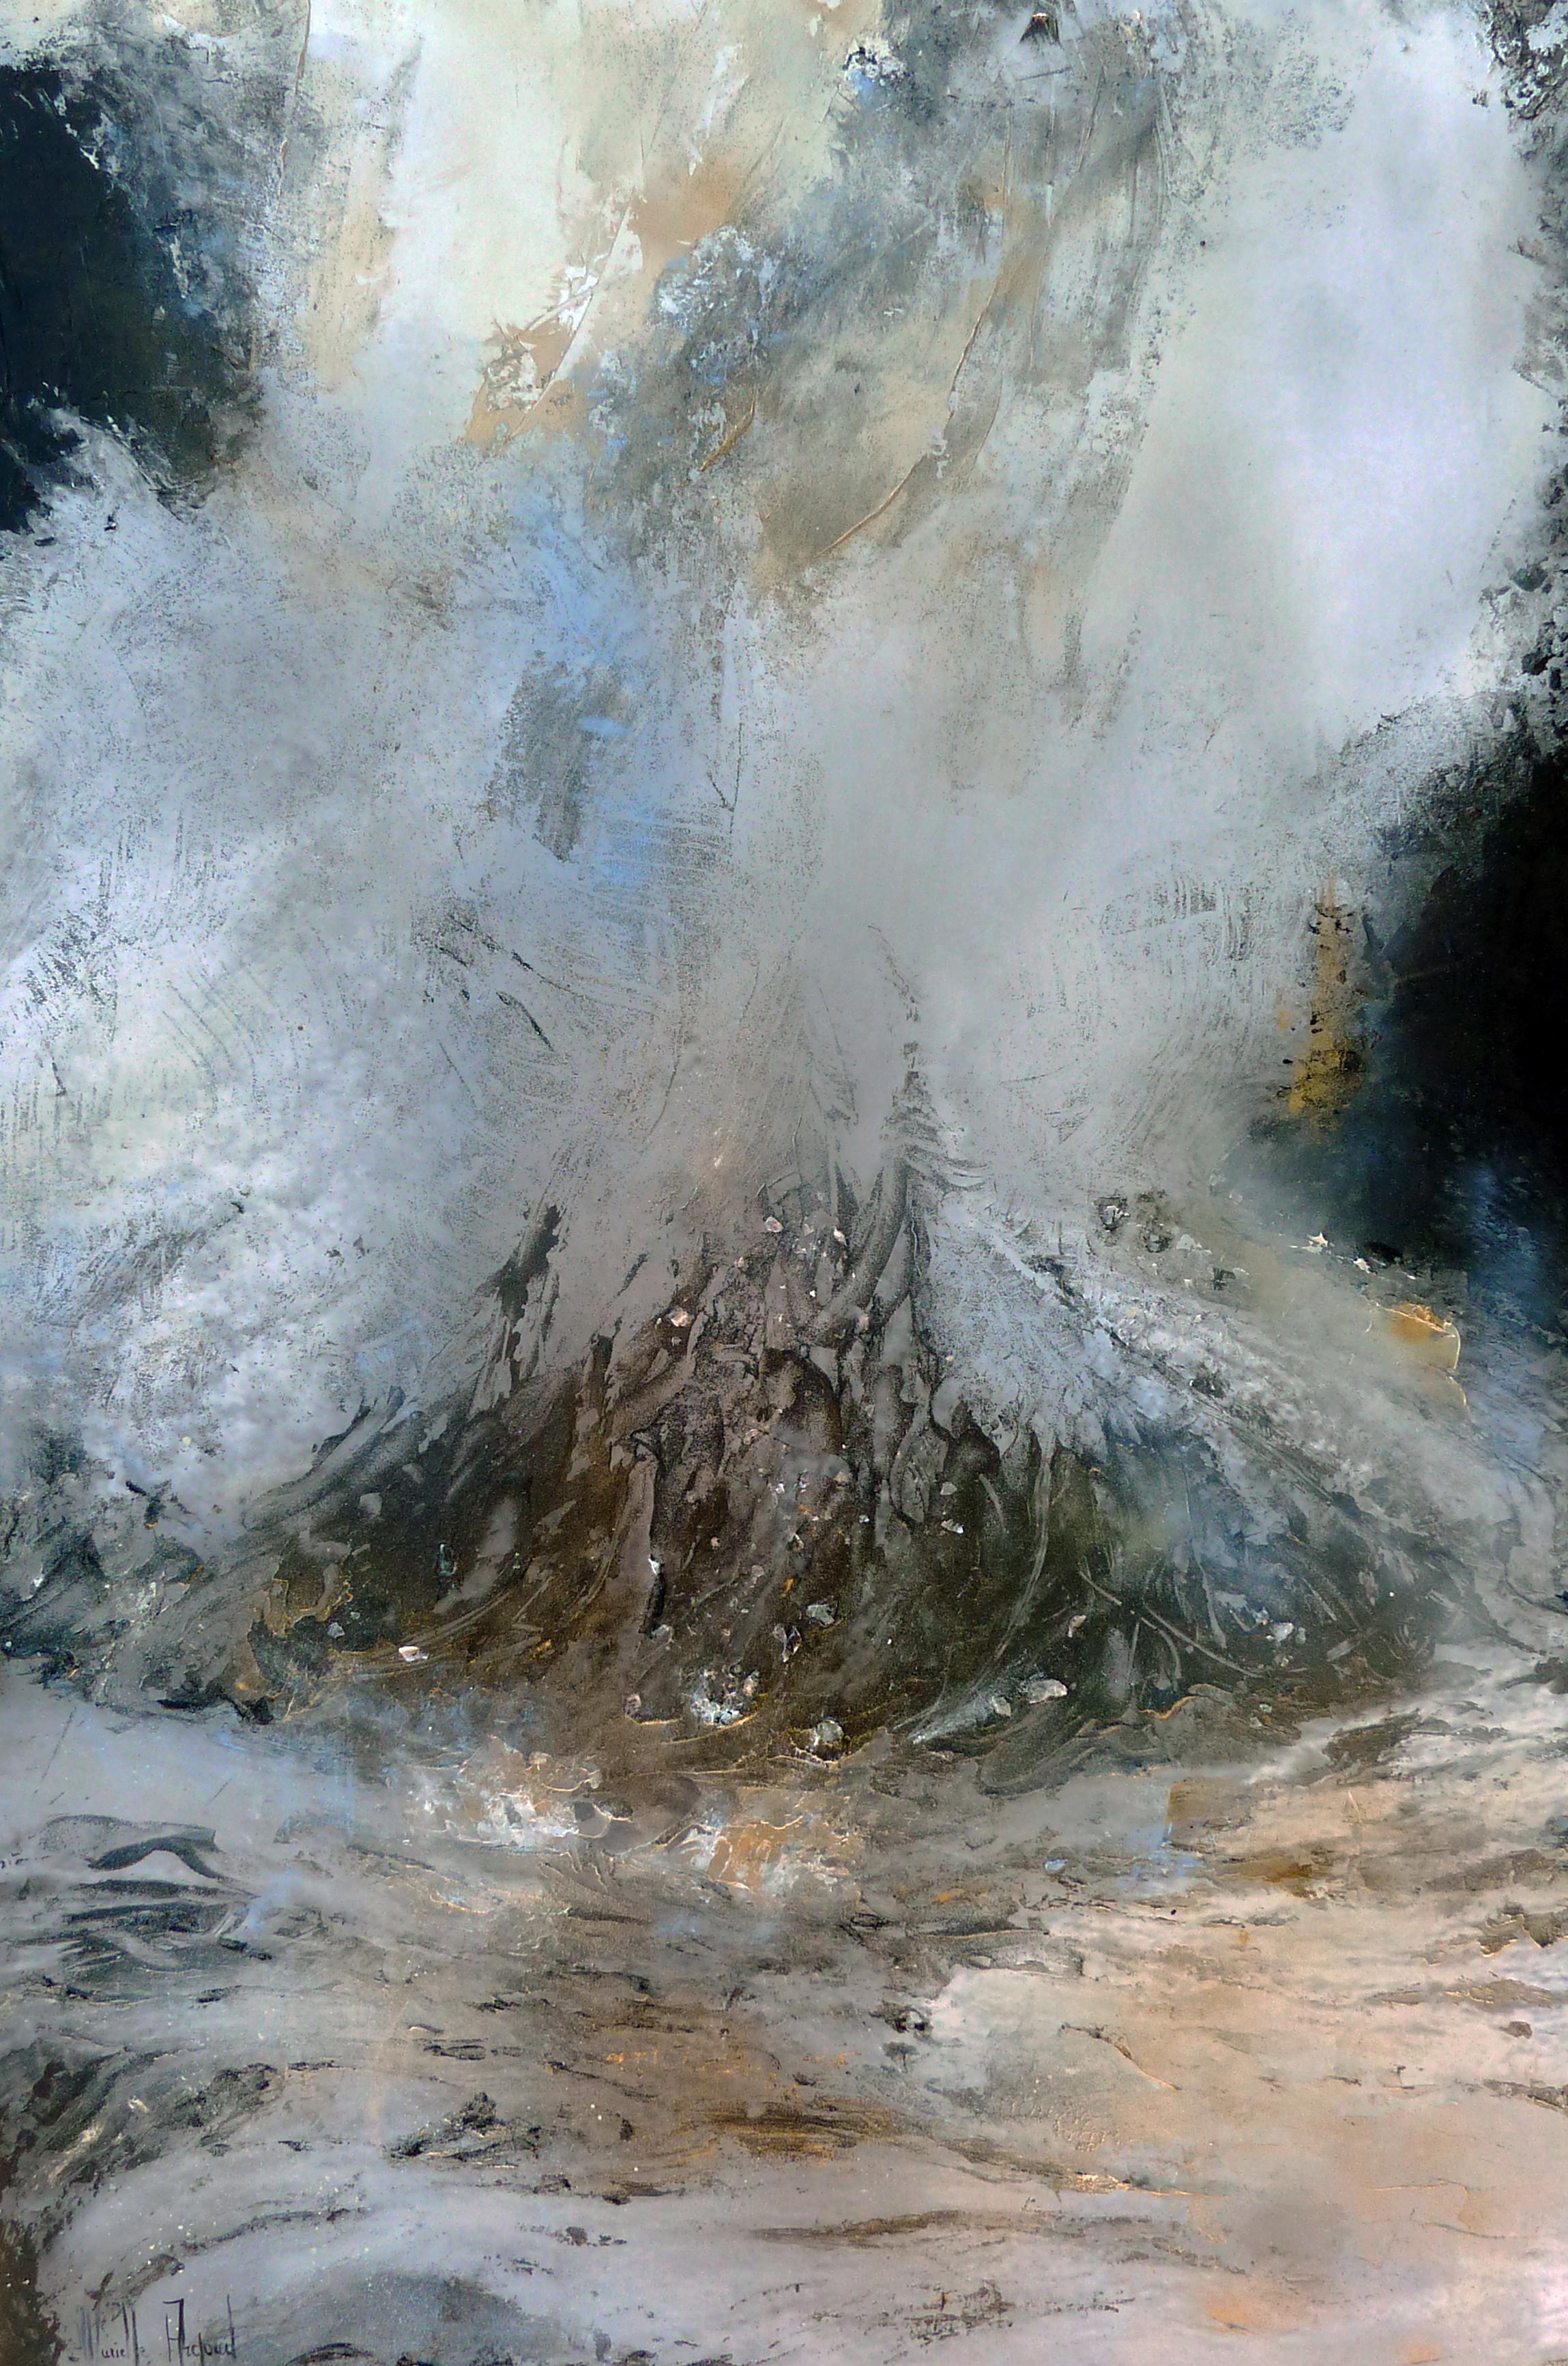 Art contemporain français de Murielle Argoud - The Human Soul is Like Water (L'âme humaine est comme l'eau). Goethe